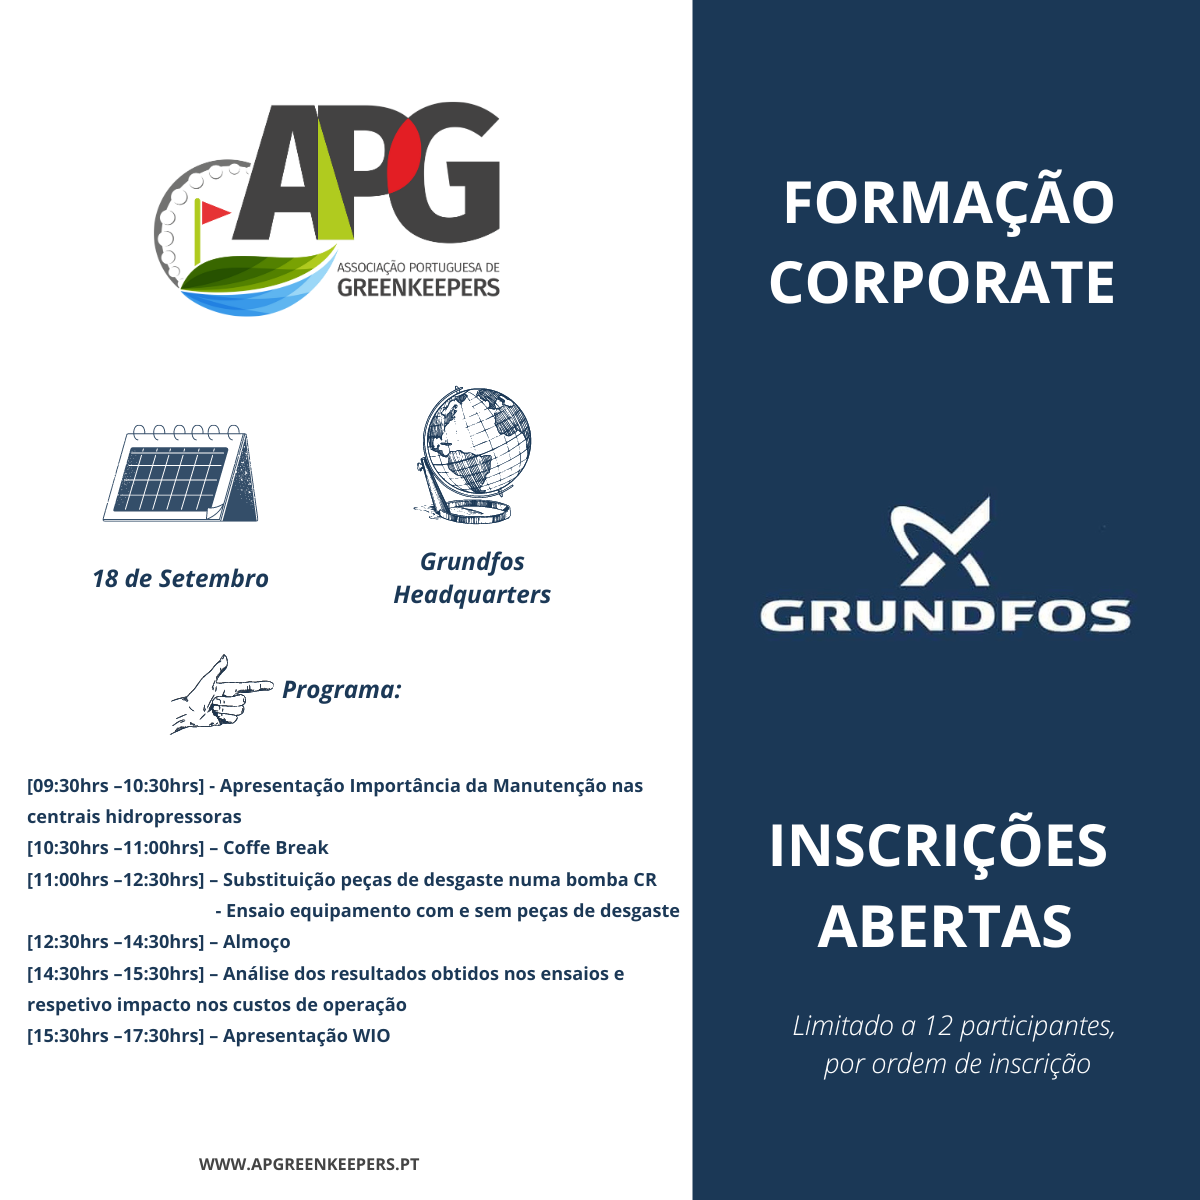 Formação Corporate - Grundfos